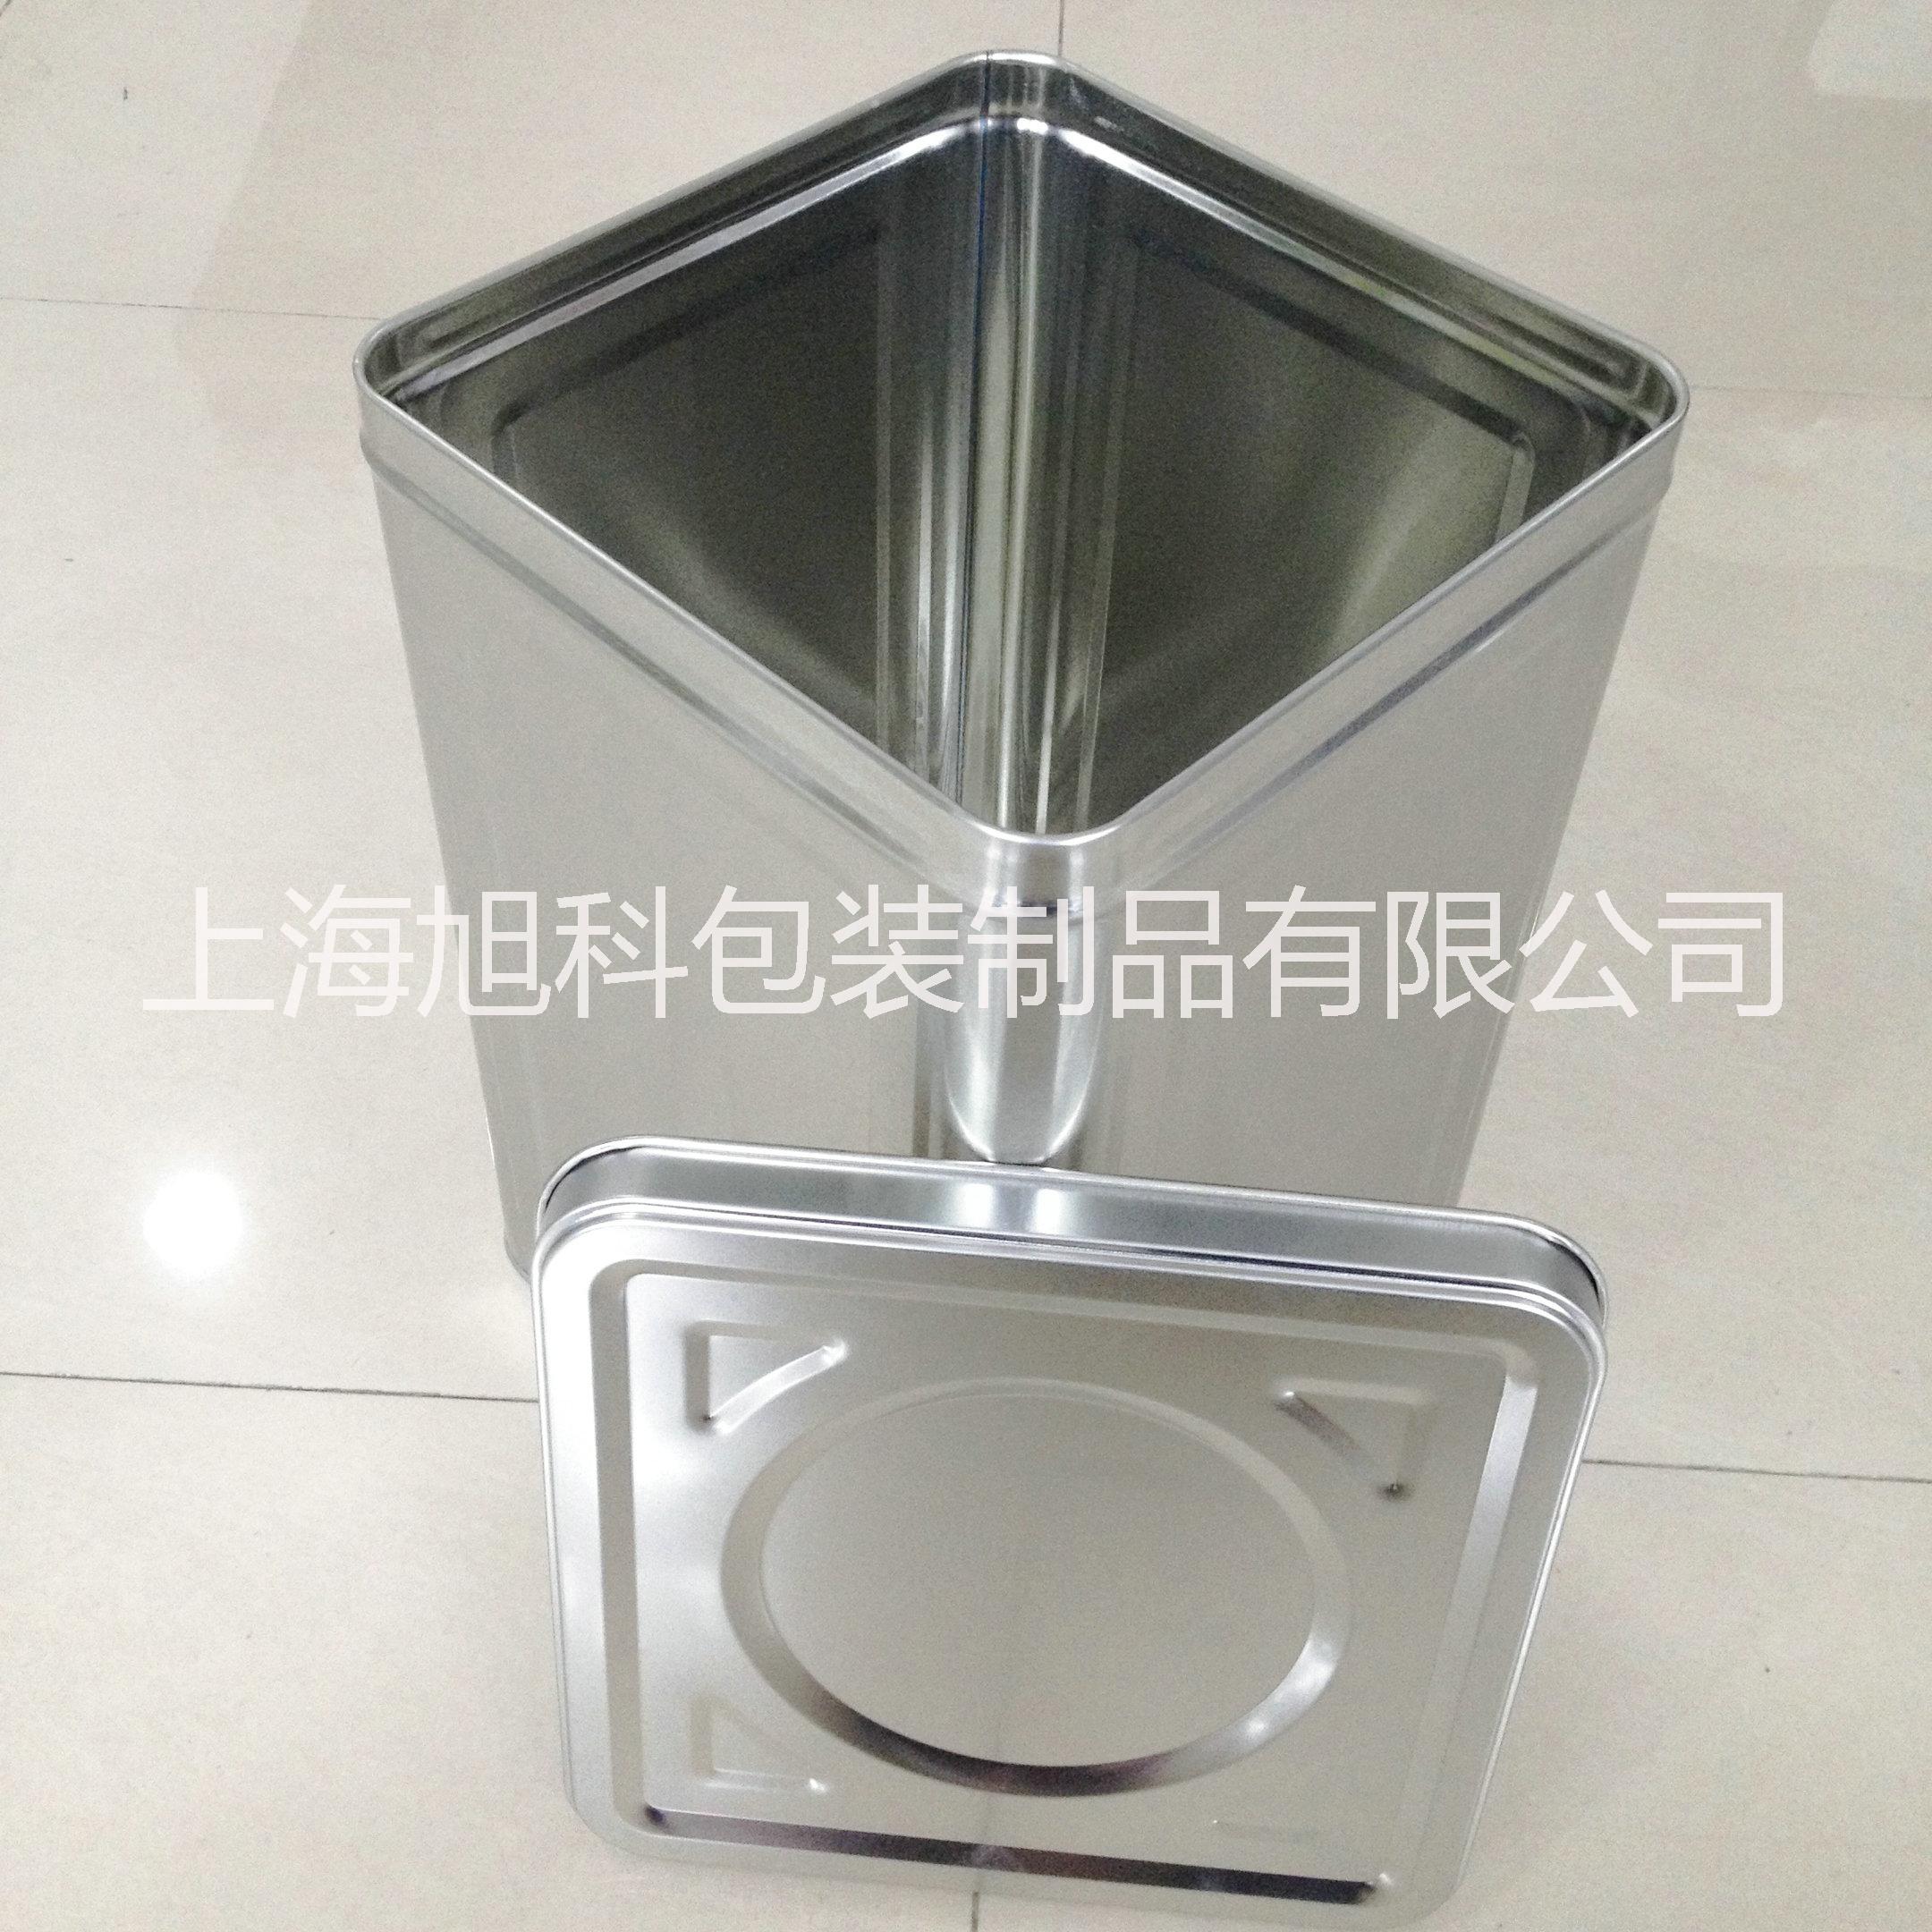 饼干桶18kg药材桶茶叶罐18L敞口干燥剂桶上海铁桶厂家定制大口方铁桶图片